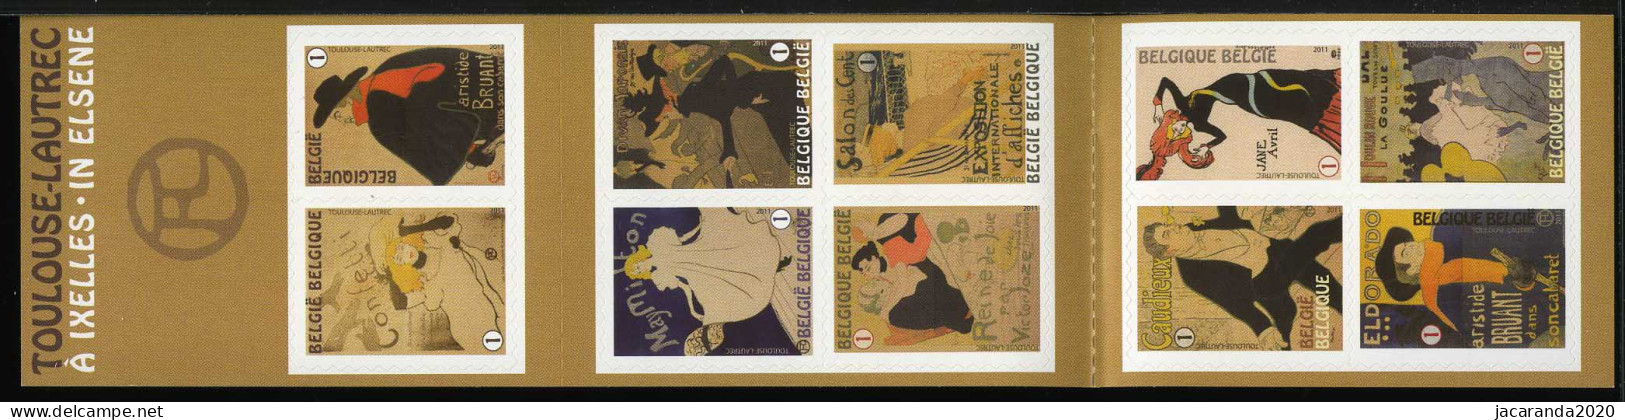 België B122 - Kunst - Henri De Toulouse-Lautrec - Art - Zelfklevend - Autocollants - 2011 - 1997-… Dauerhafte Gültigkeit [B]